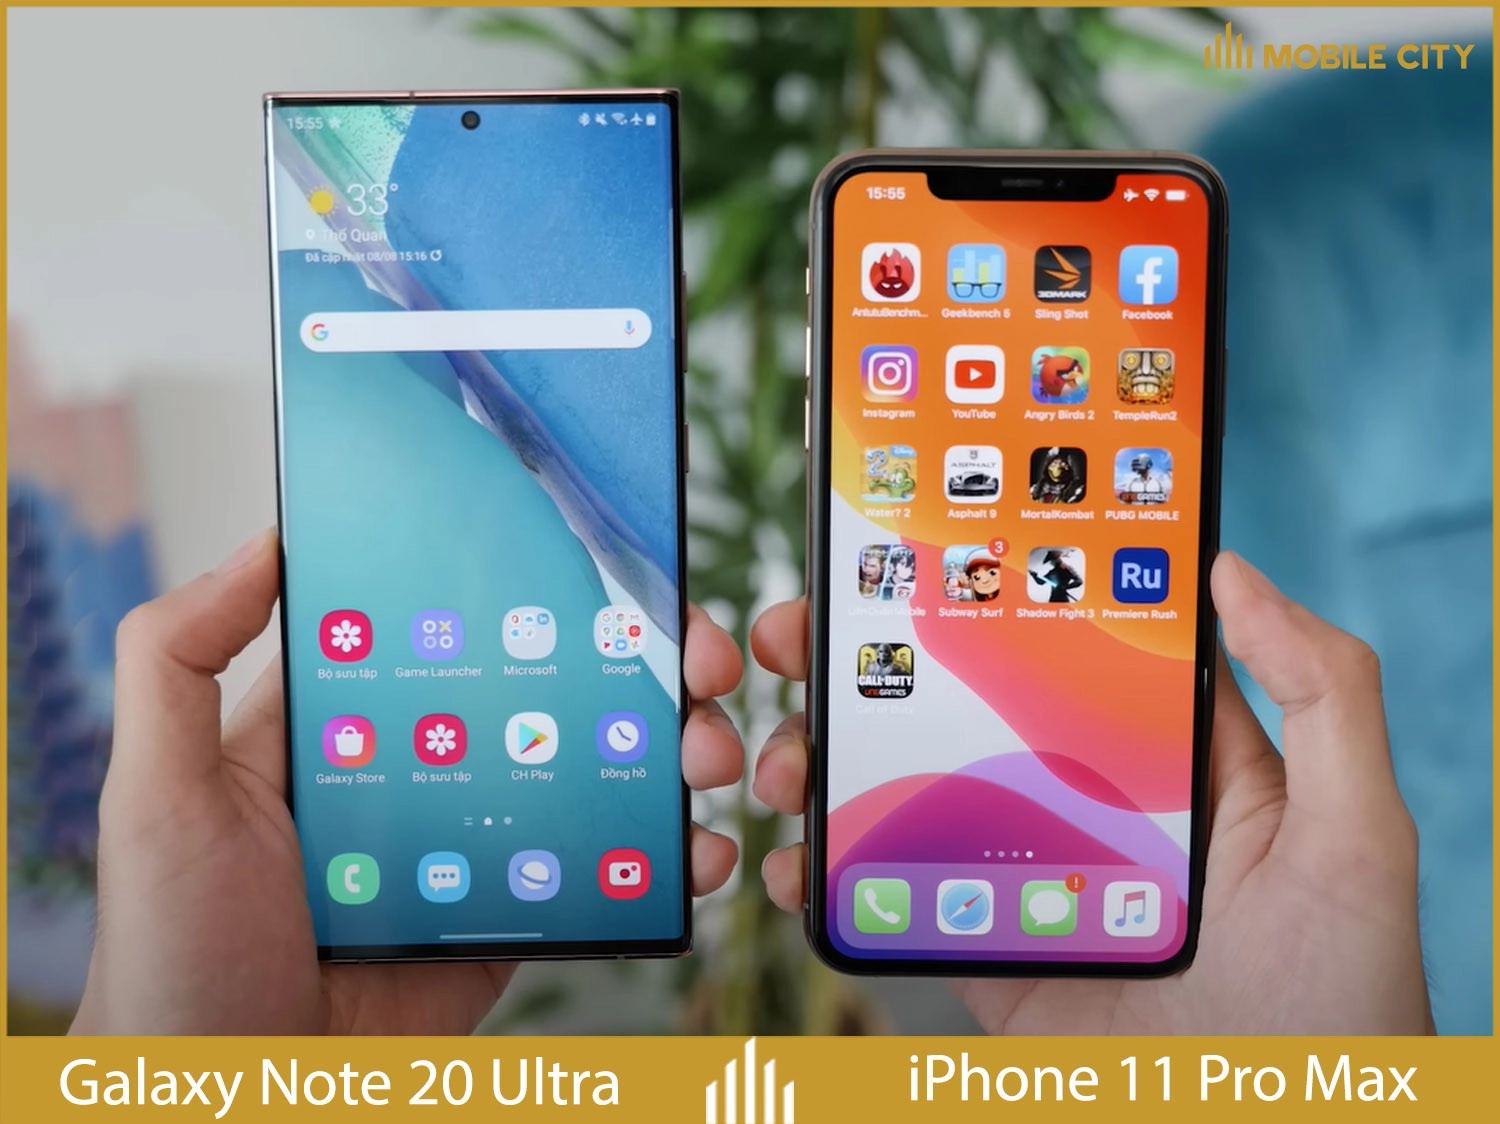 iphone-11-pro-max-cu-so-voi-galaxy-note20-ultra-cu-02